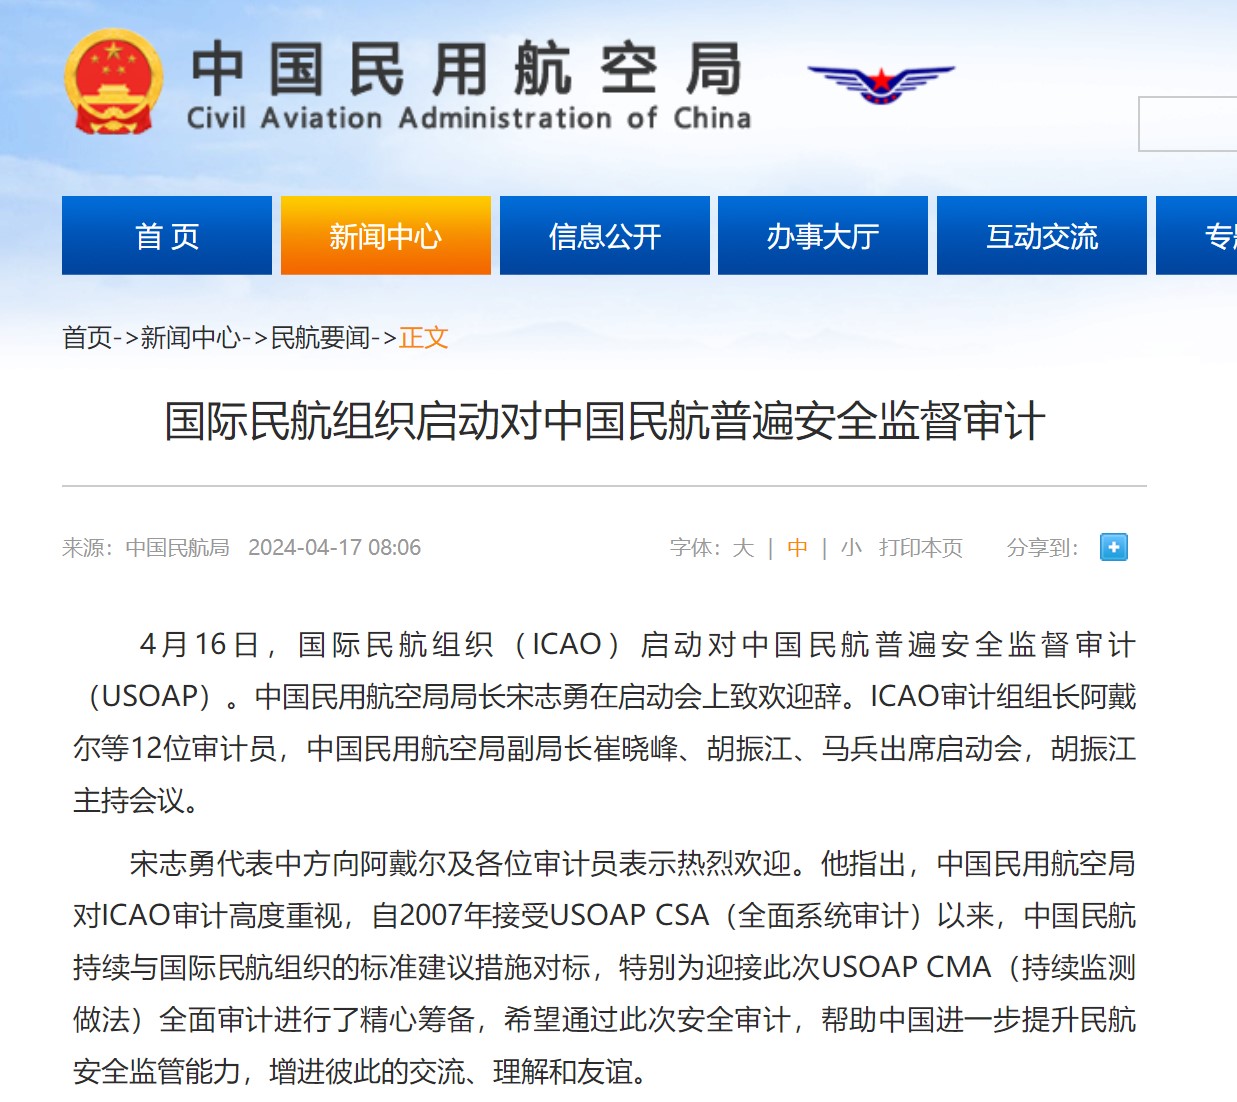 国际民航组织启动对中国民航普遍安全监督审计